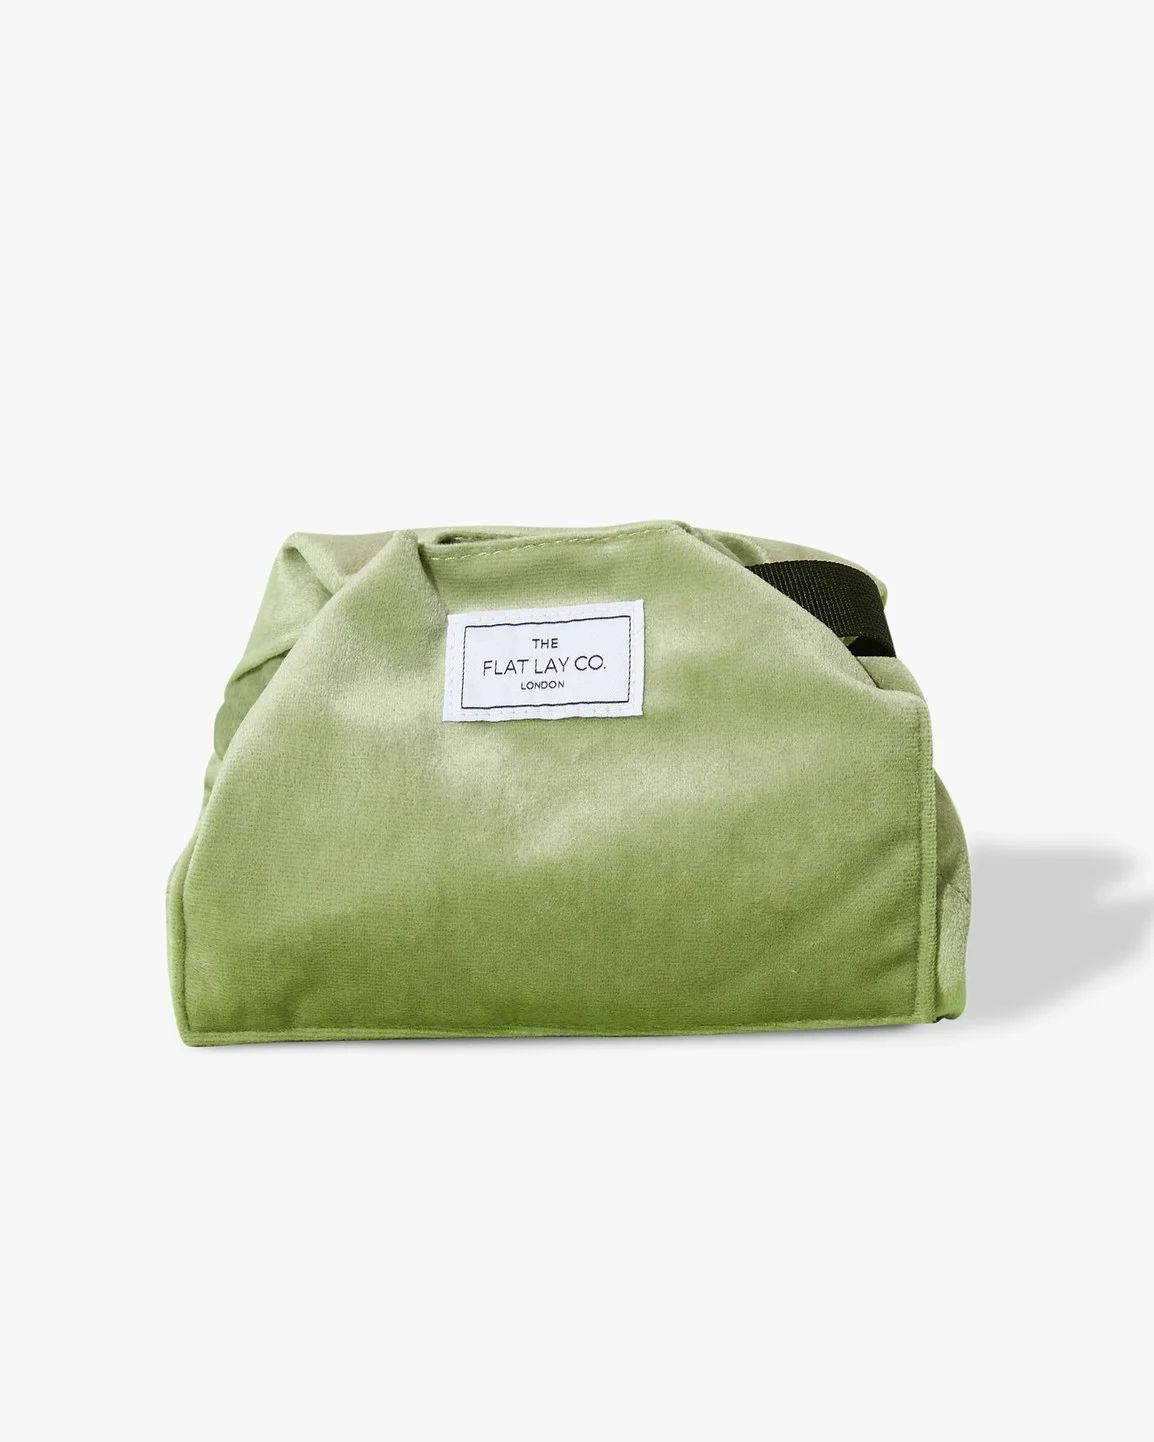 The Flat Lay Co Sage Green Velvet Make Up Bag | Oliver Bonas | Oliver Bonas (Global)